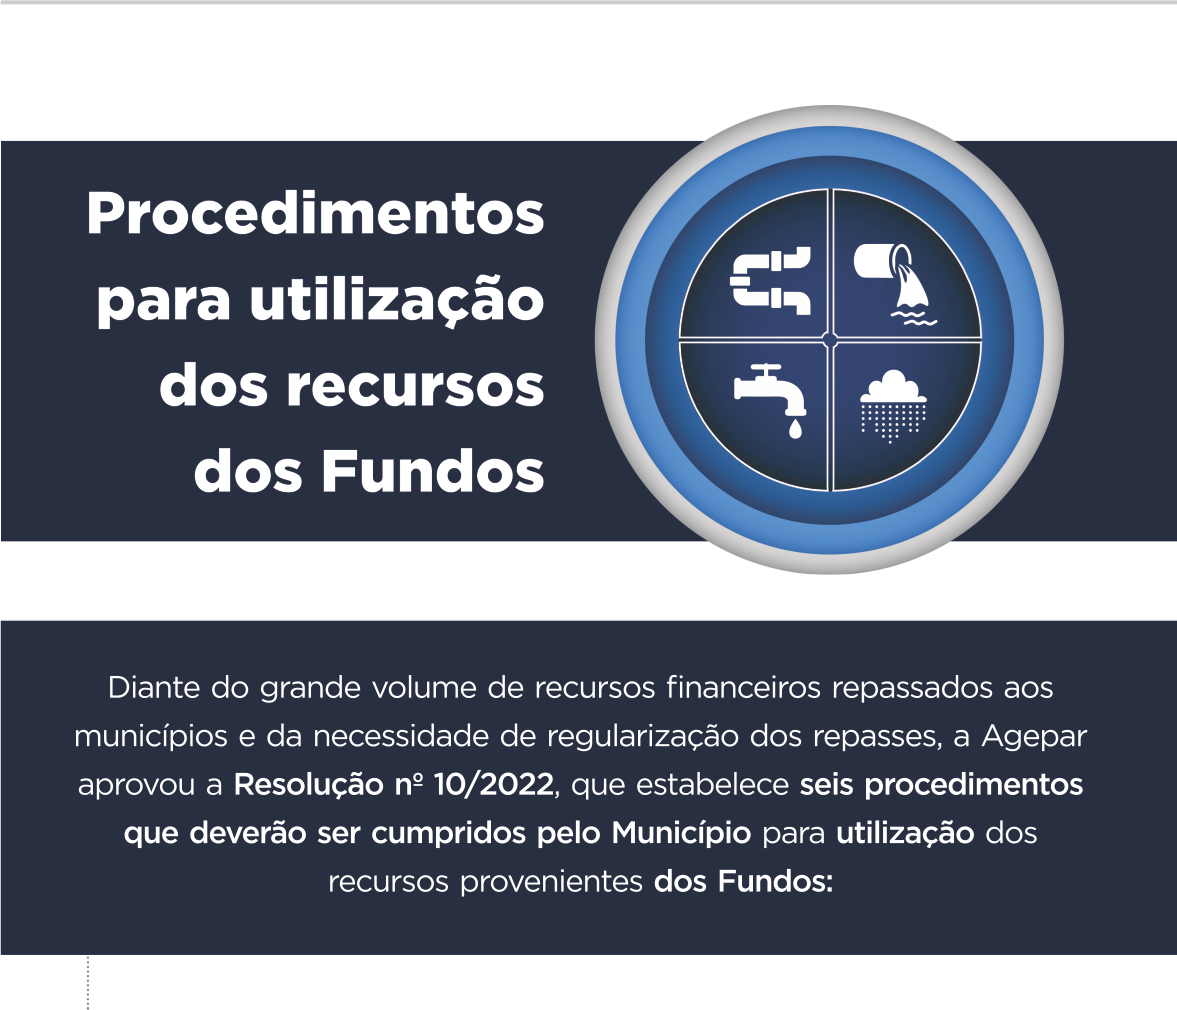 Fundos Municipais - Resolução 10/2022